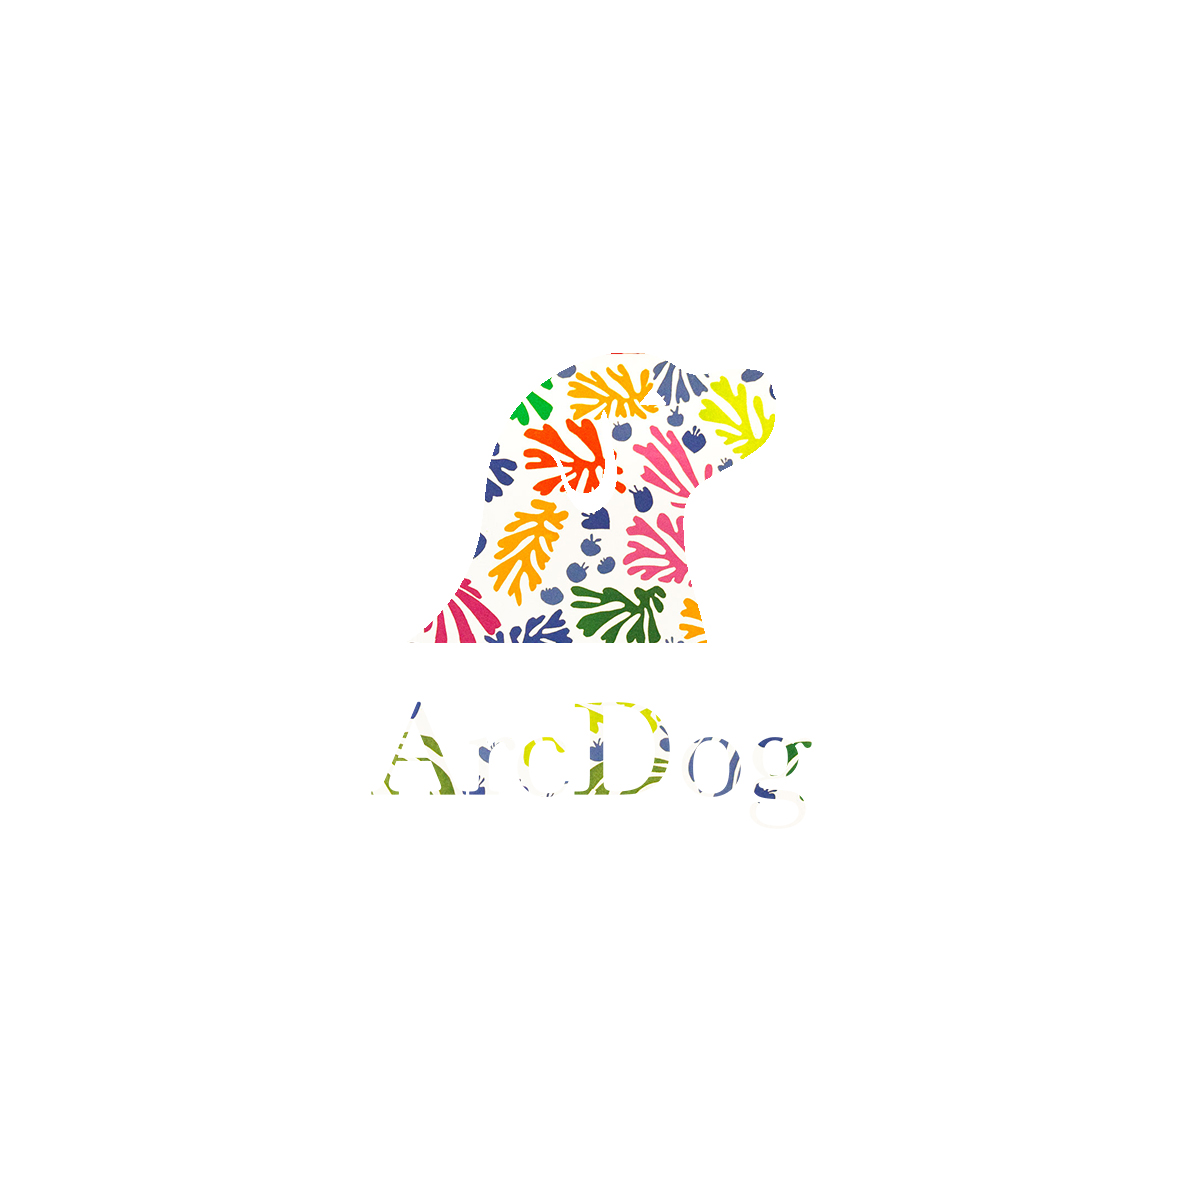 One day, one logo, one artist (#HenriMatisse). 2016/06/26.